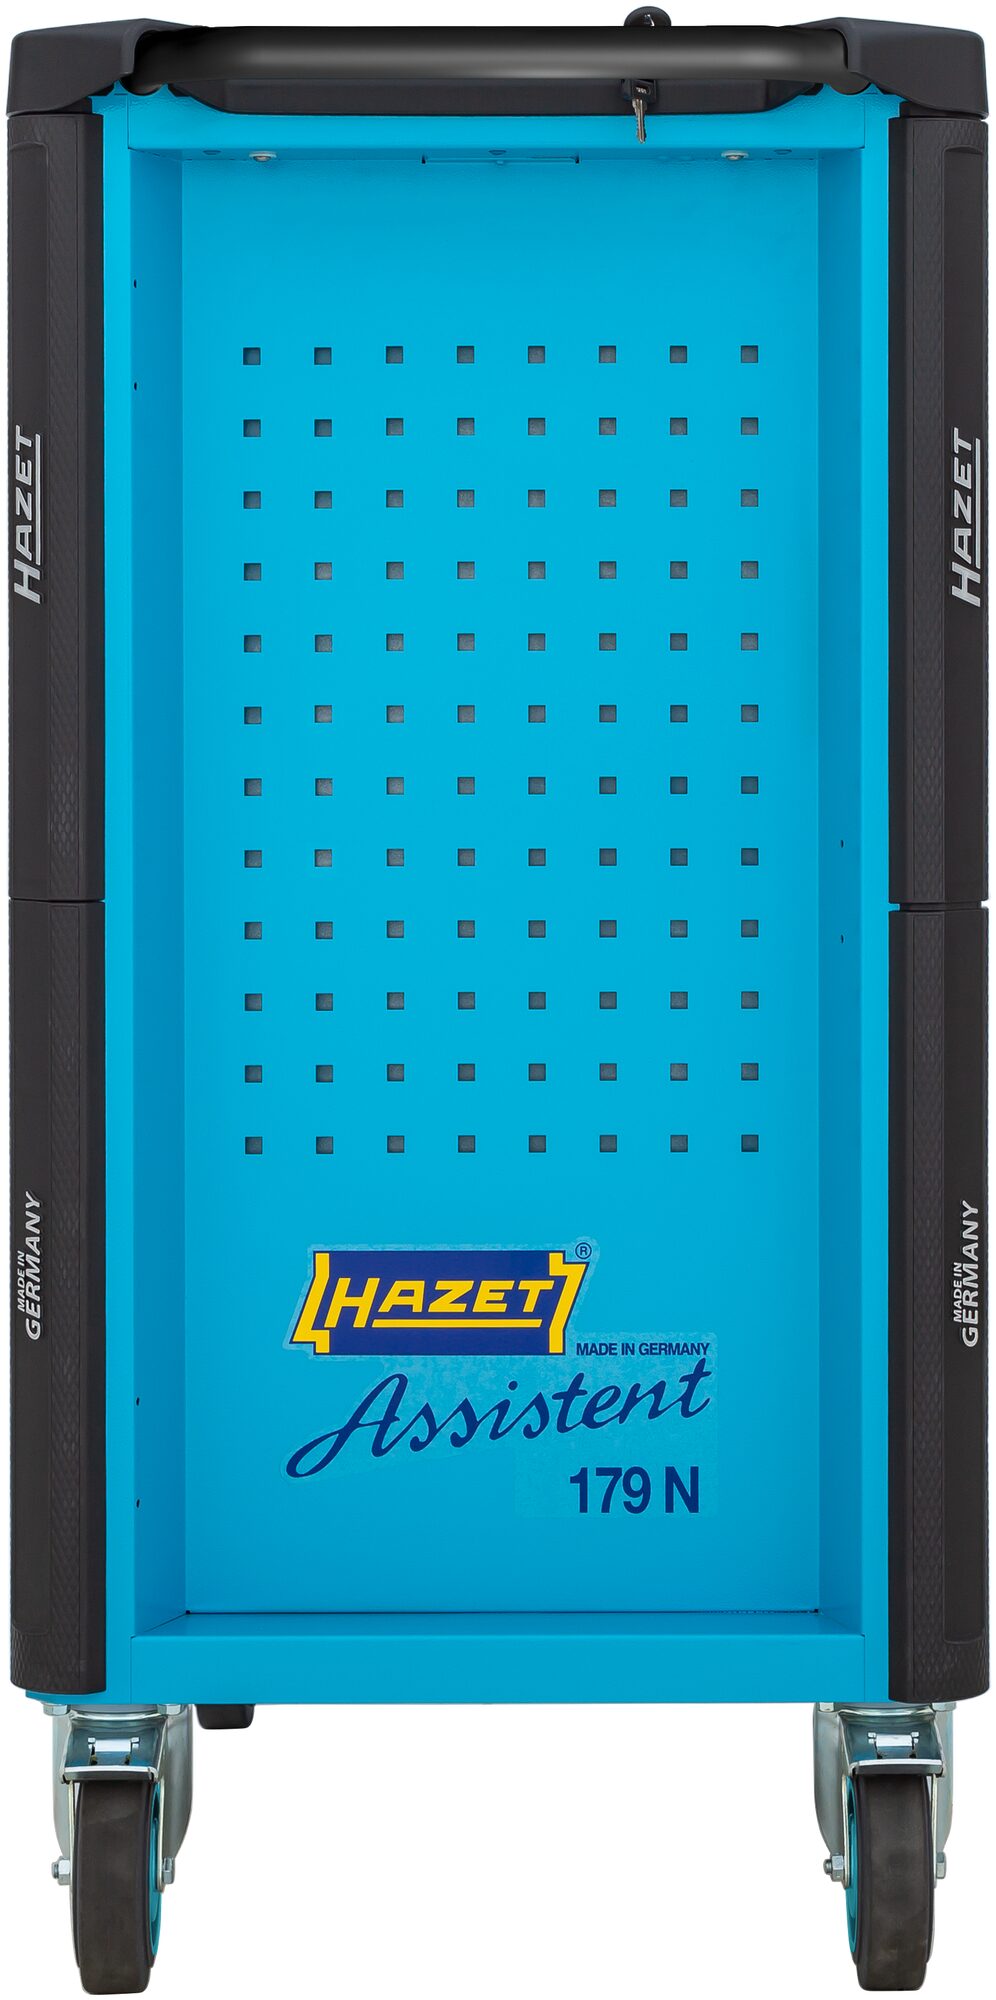 HAZET Werkstattwagen Assistent 179N-7/220 · Werkzeuge: 220